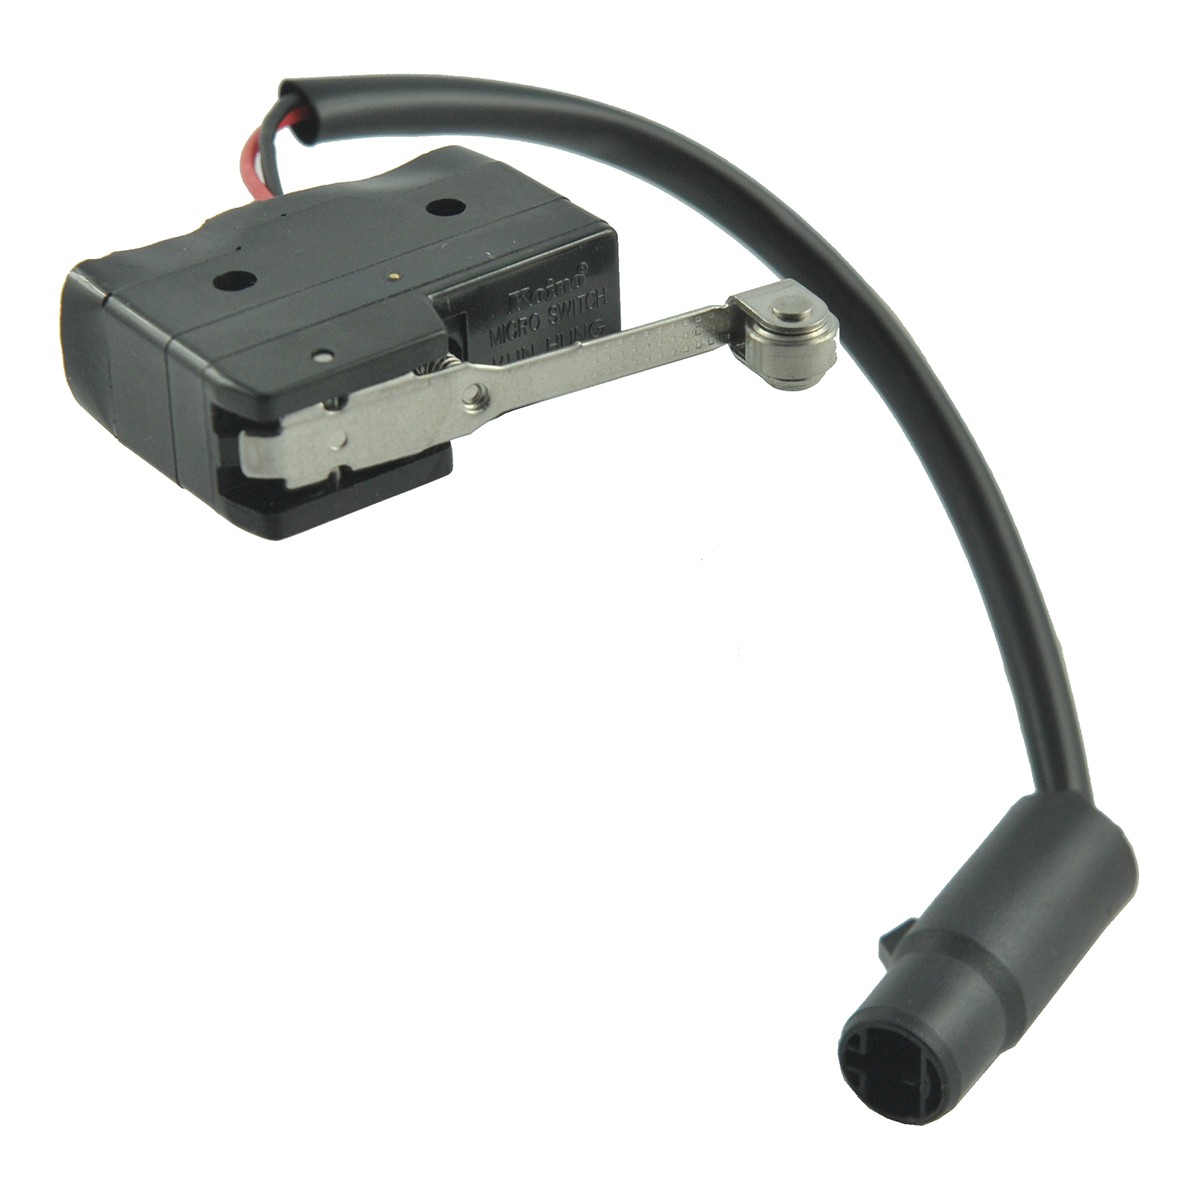 PTO/Sensor de posición de palanca PTO / 125VAC/15A / TRG750 / MT40007111 / A1750300 / 40007111